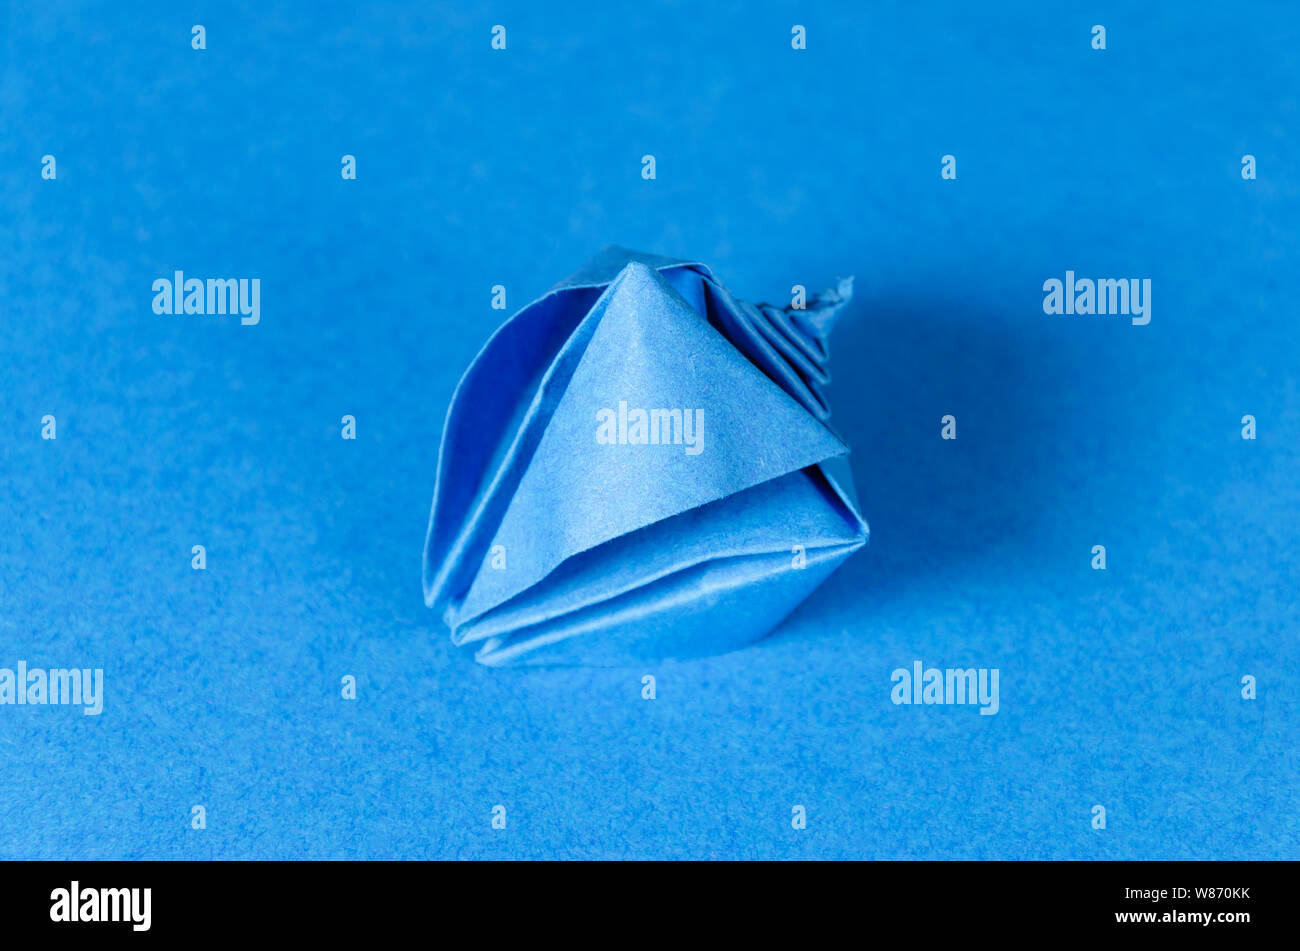 Blau origami Muschel auf blauem Hintergrund. Japanische Kunst des Papierfaltens. Flache quadratische Blatt Papier in fertige Skulptur übertragen. Stockfoto